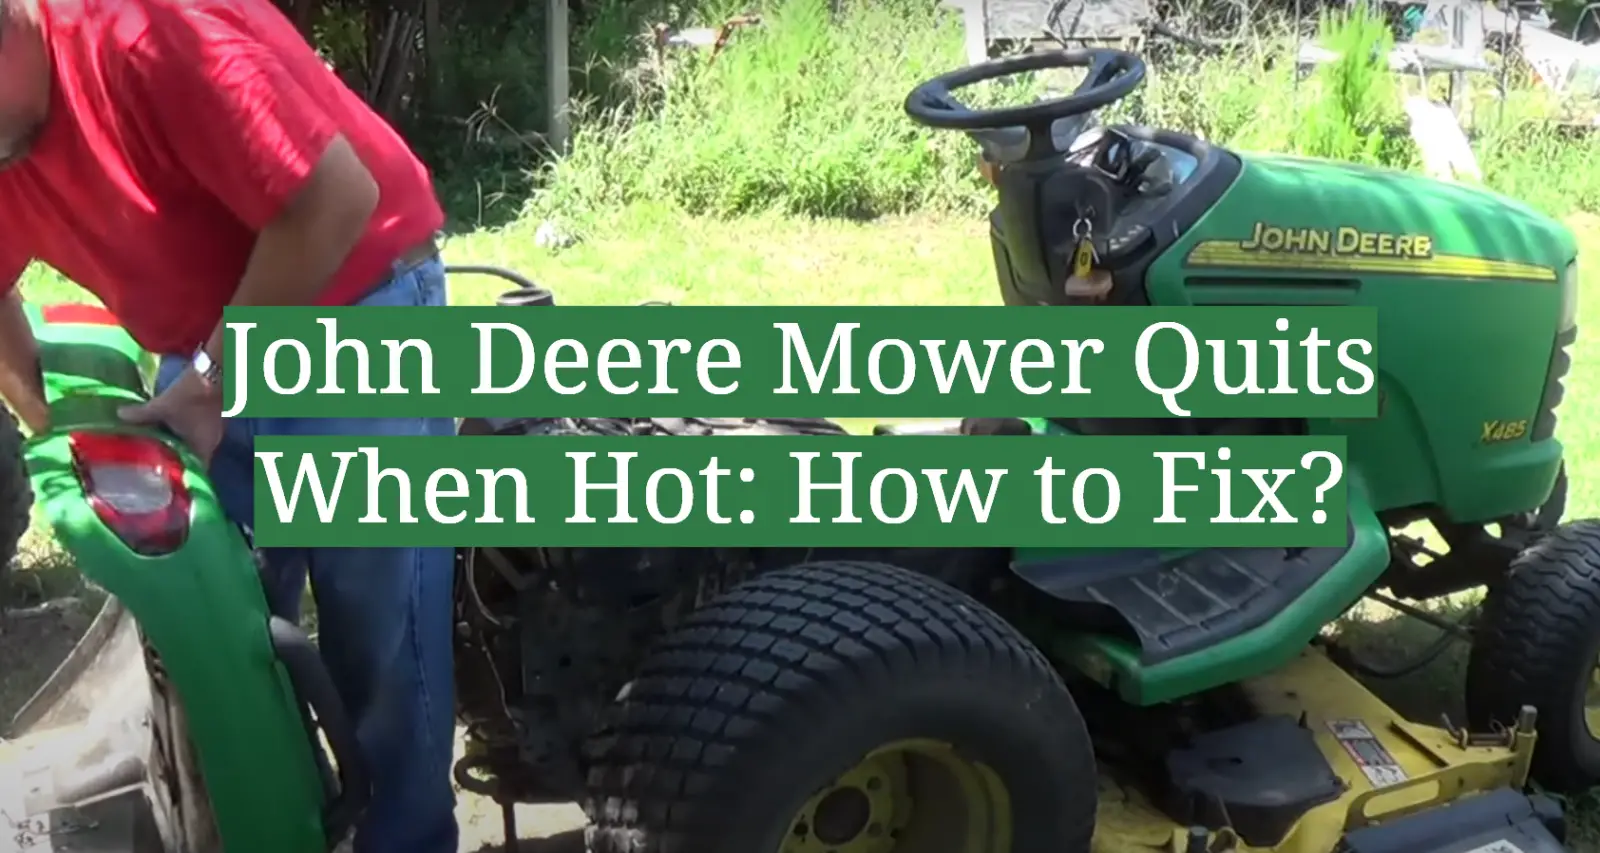 John Deere Mower Quits When Hot: How to Fix?